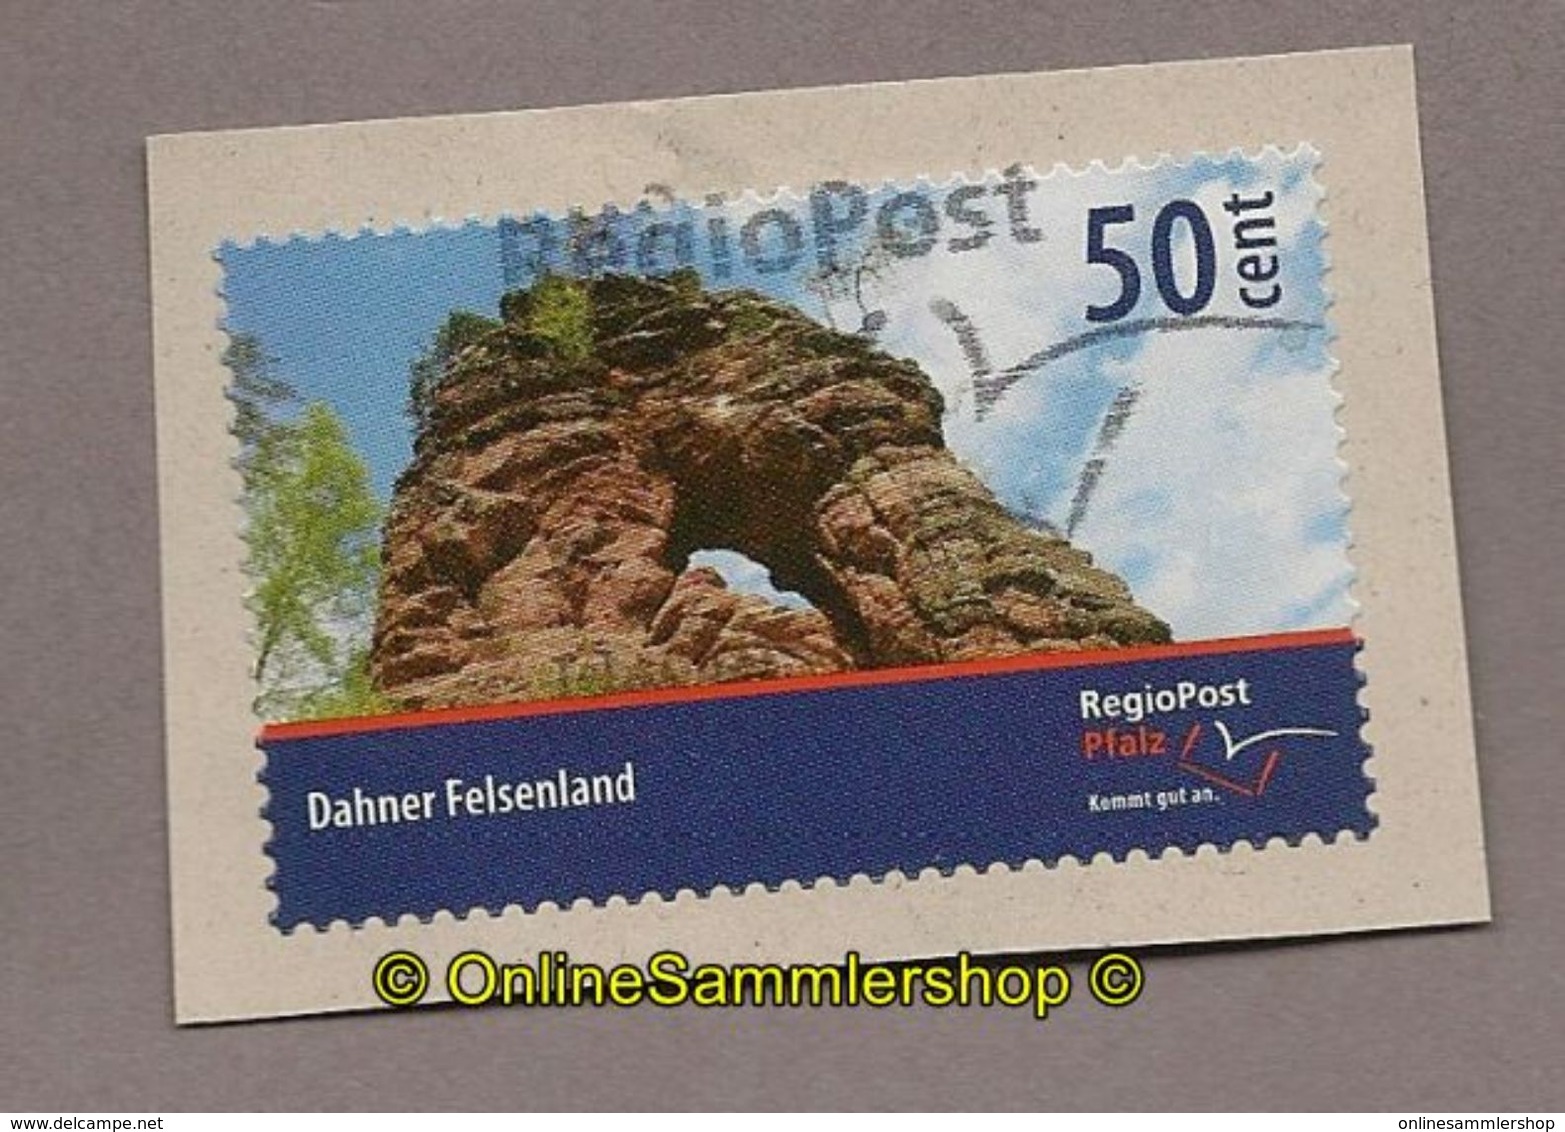 (L13) RegioPost Pfalz - Marke: Dahner Felsenland (Wert: 50) - Privatpost